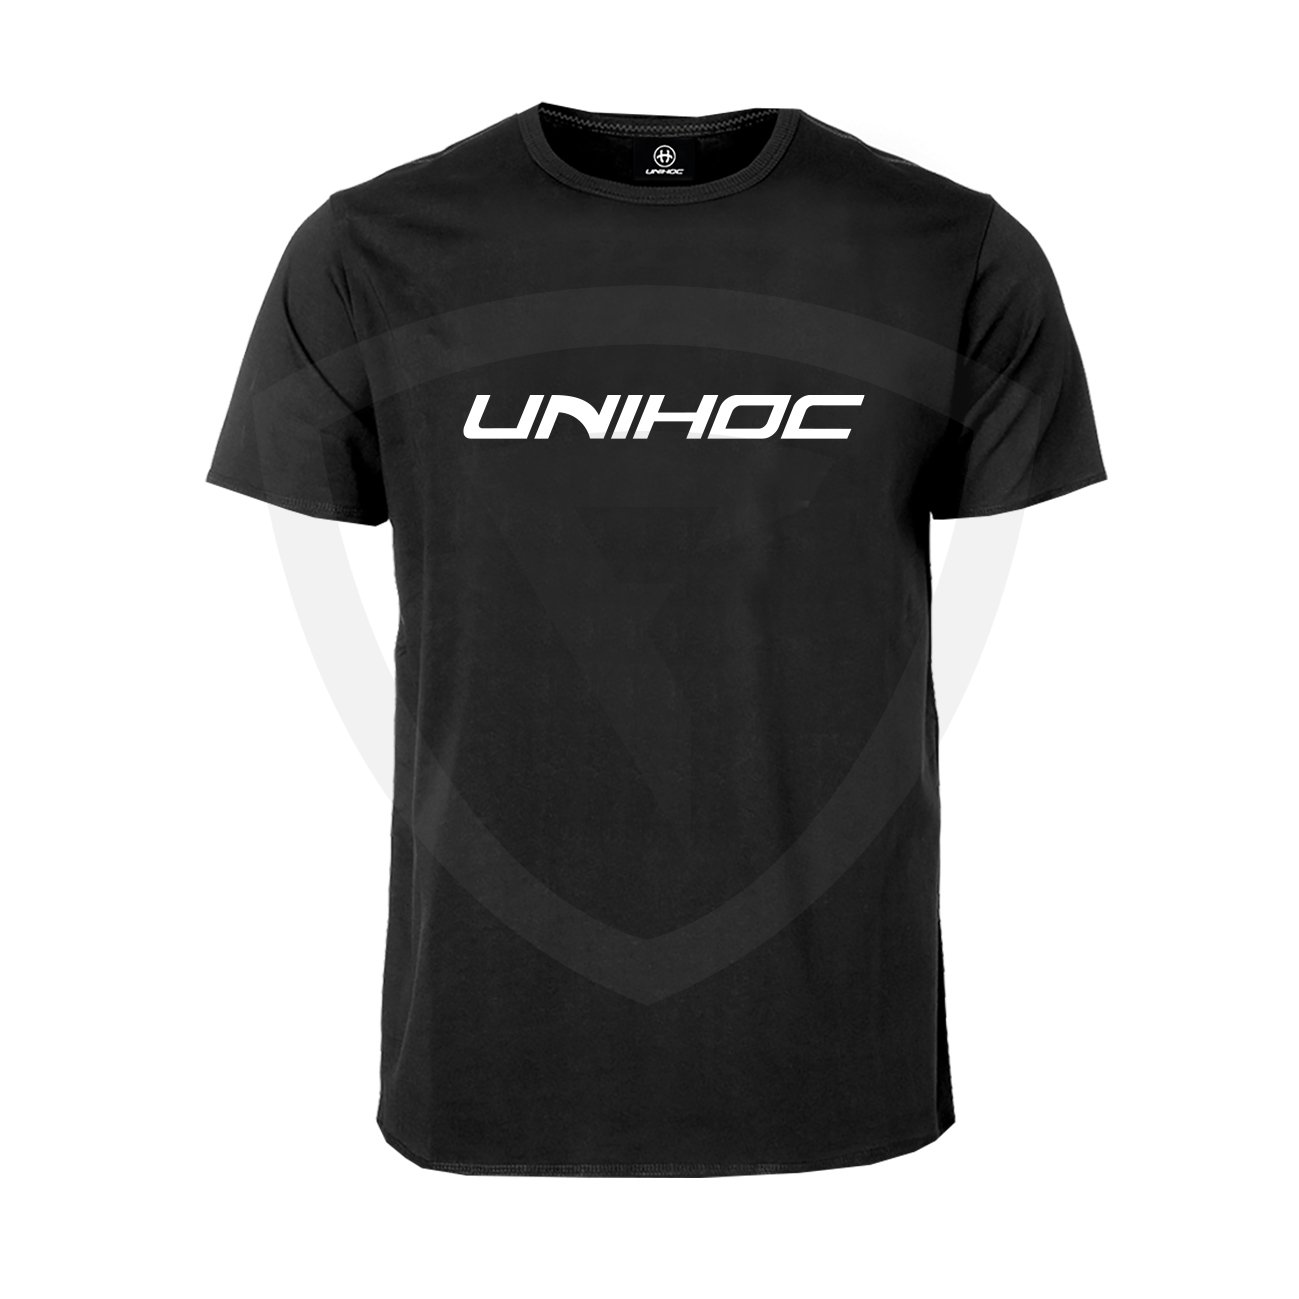 Unihoc T-shirt Classic Black SR M černá